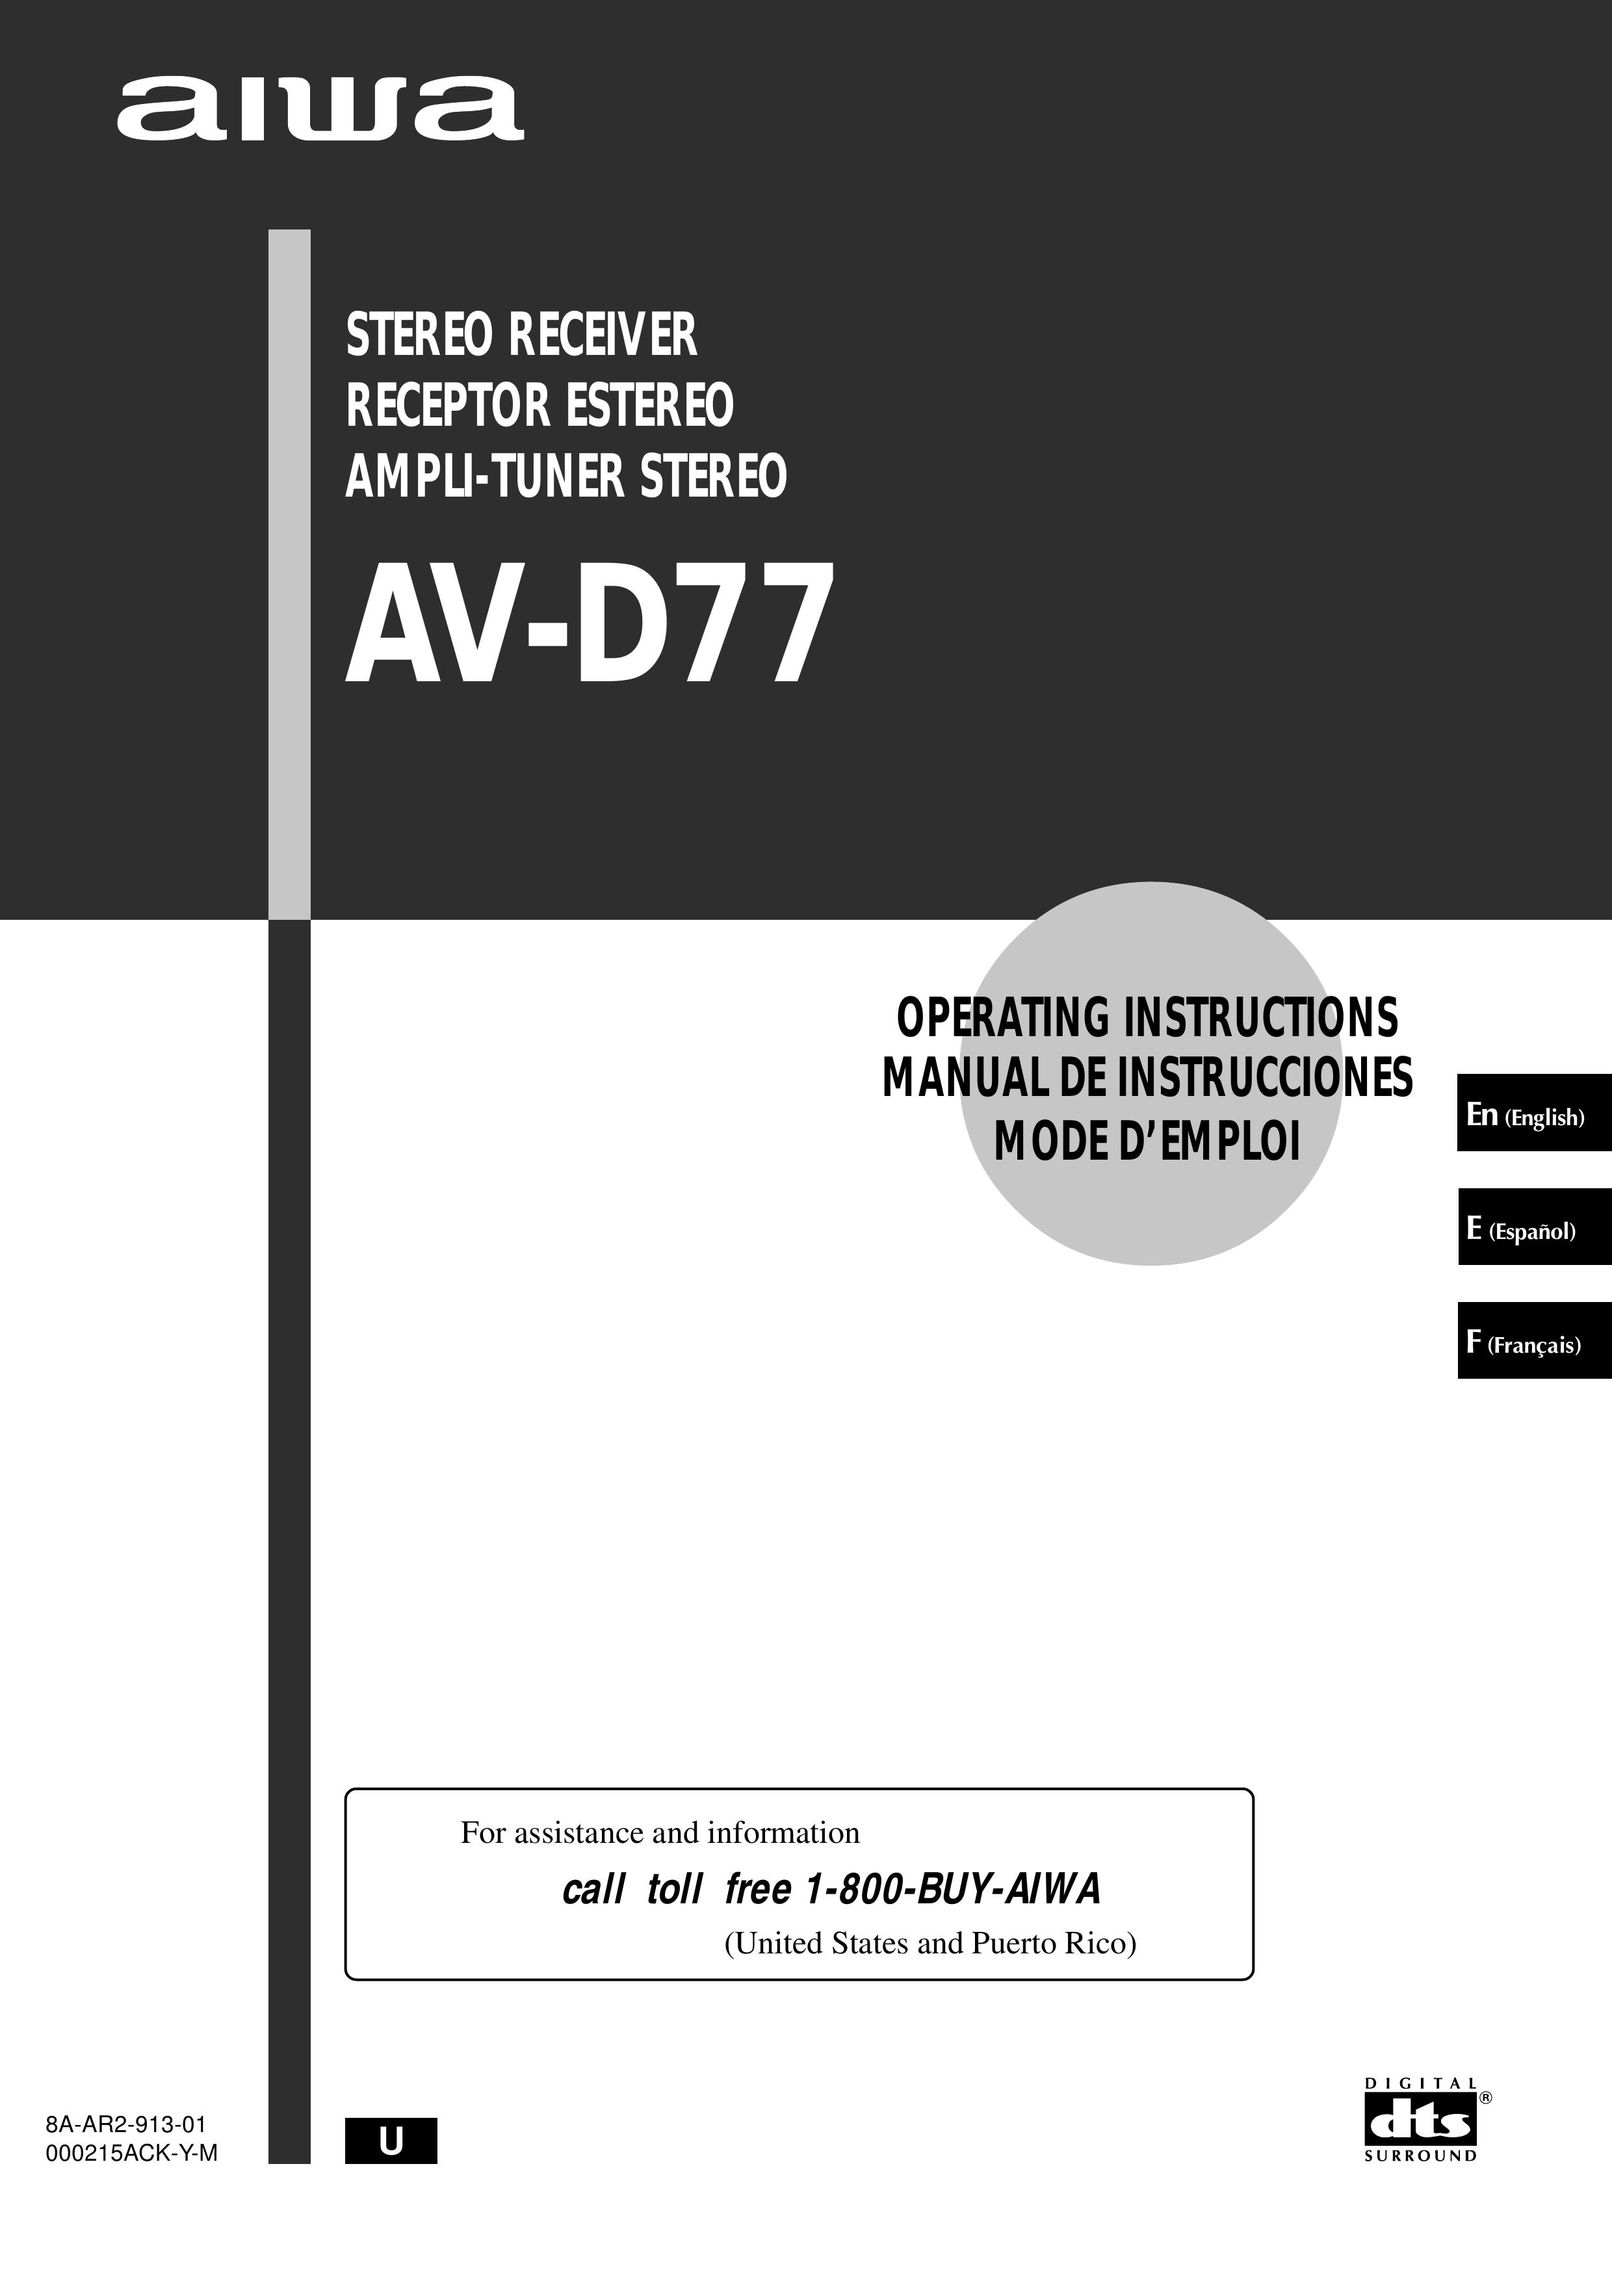 Aiwa AV-D77 Stereo System User Manual